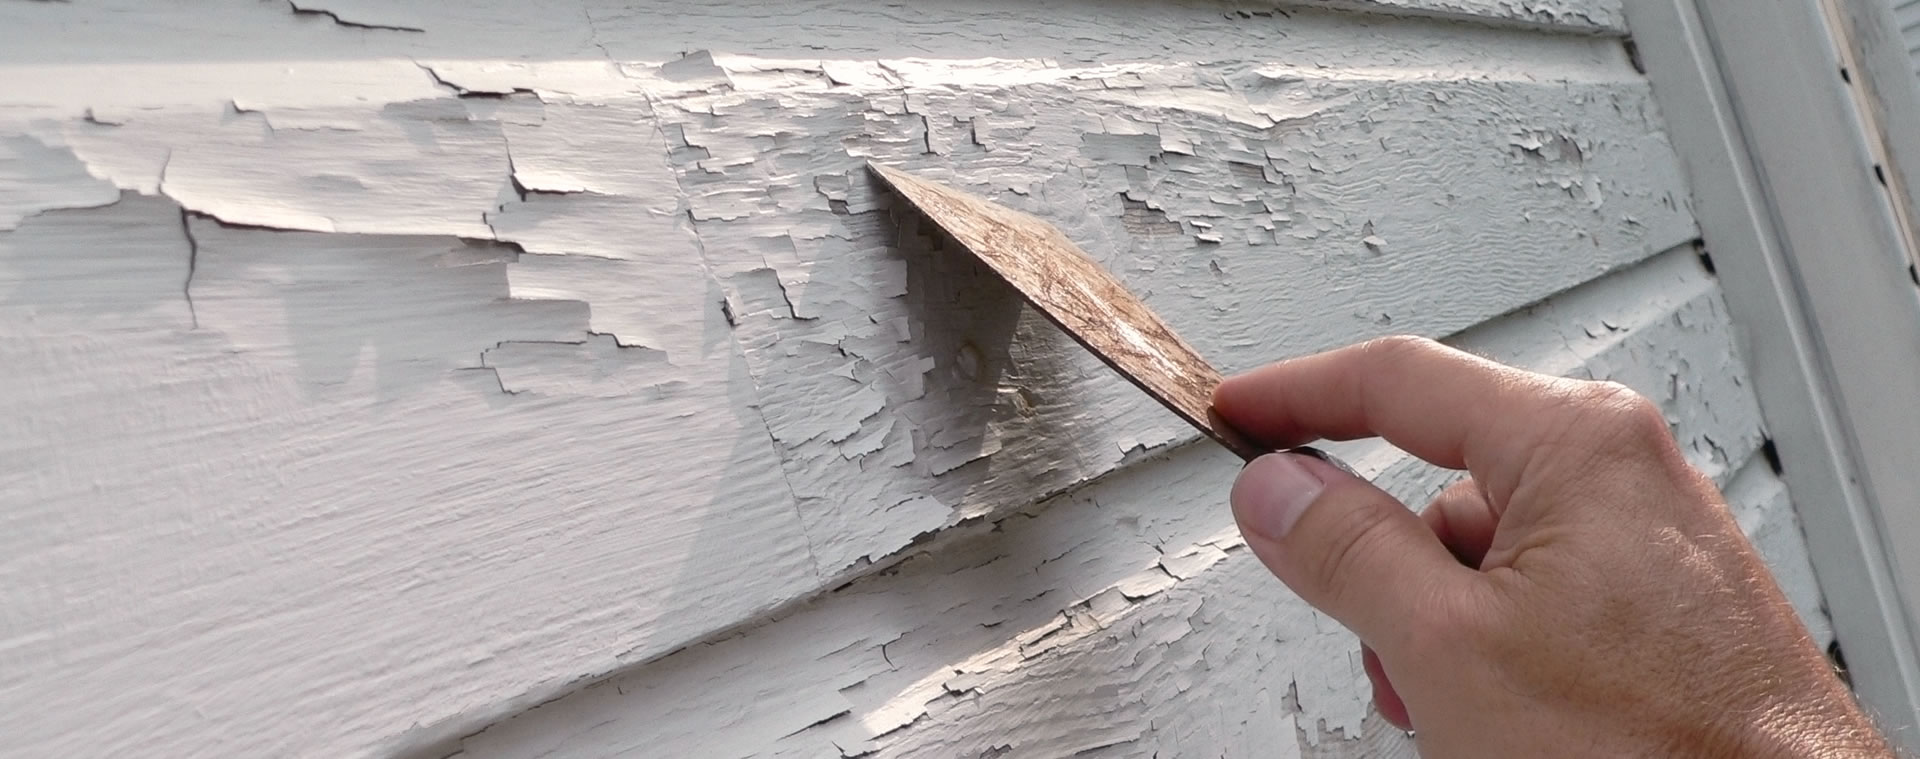 Как быстро удалить пятная от краски со стен и пола